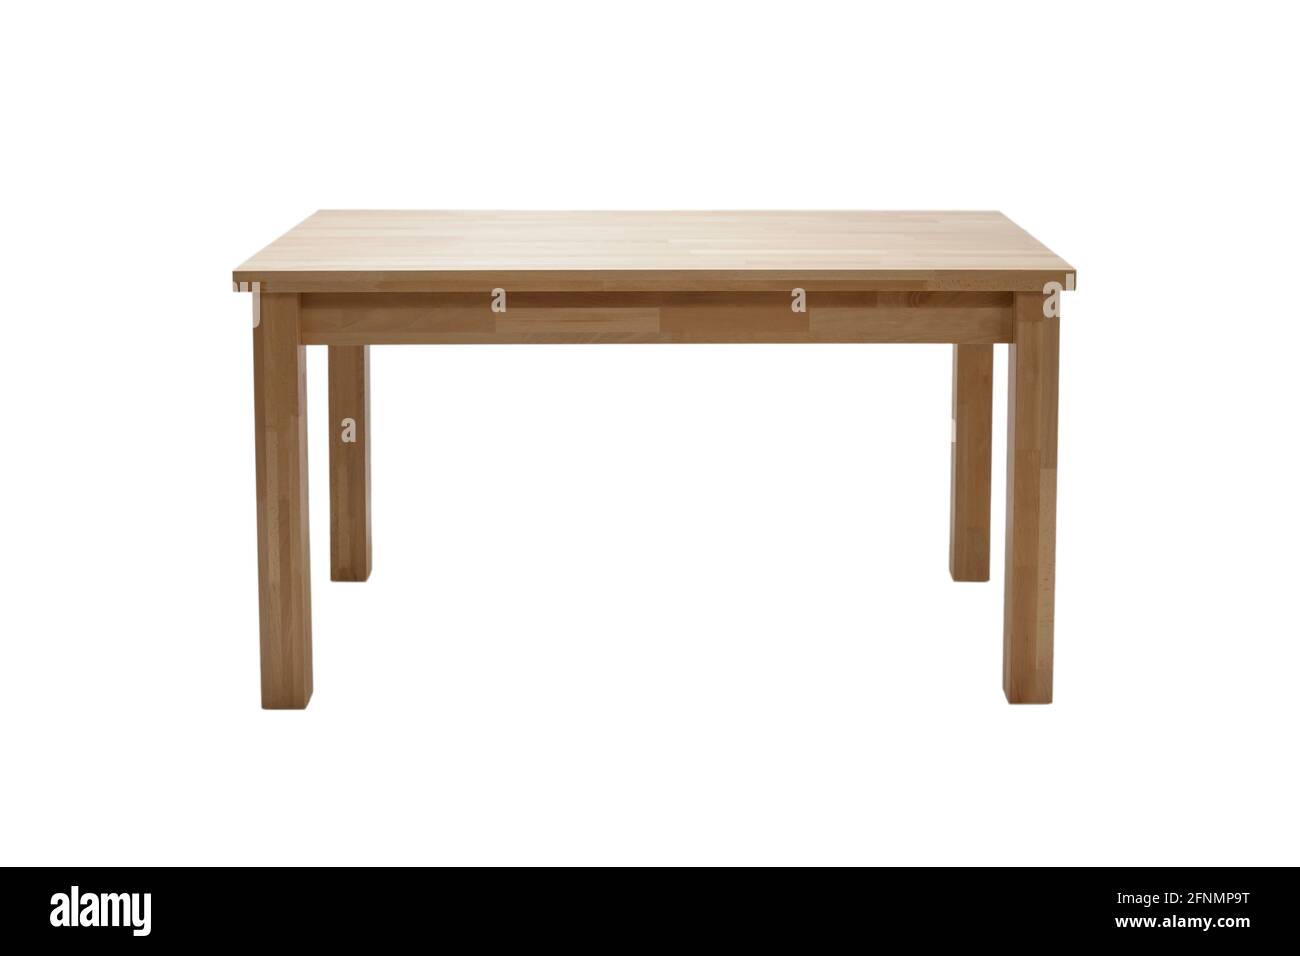 Tavolo moderno in legno isolato su sfondo bianco. Cucina tavolo da pranzo, vista frontale. Foto Stock